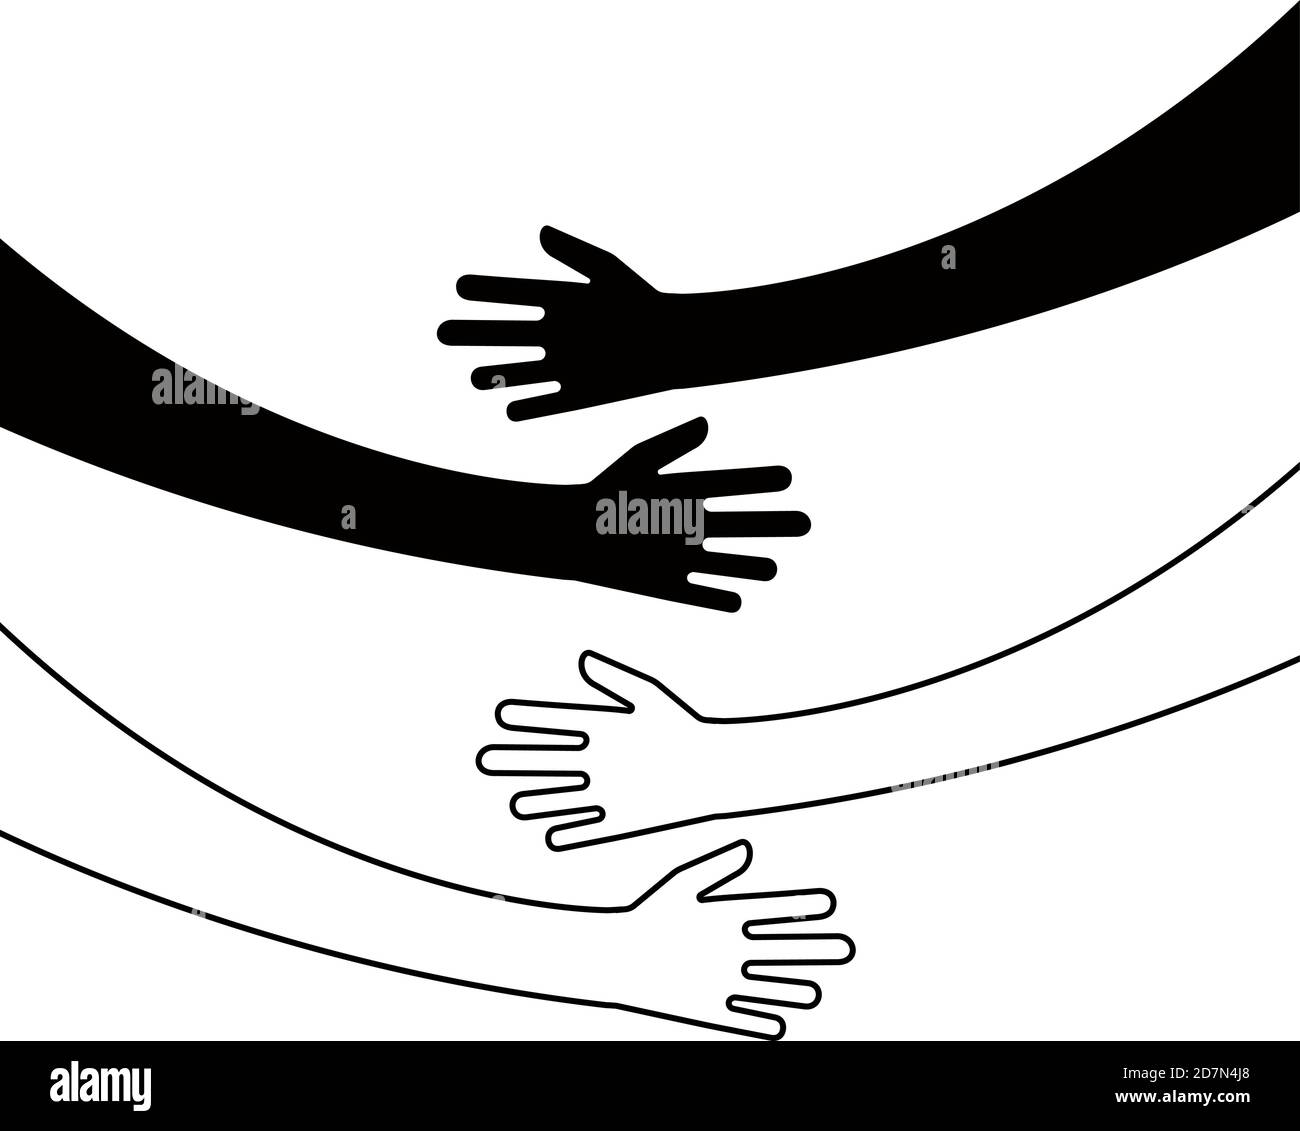 Mani che abbracciano. ARM abbracciare, credenza insieme unico rapporto hugged mani vettore isolato concetto. Amore e amicizia, relazione abbracciano l'illustrazione Illustrazione Vettoriale